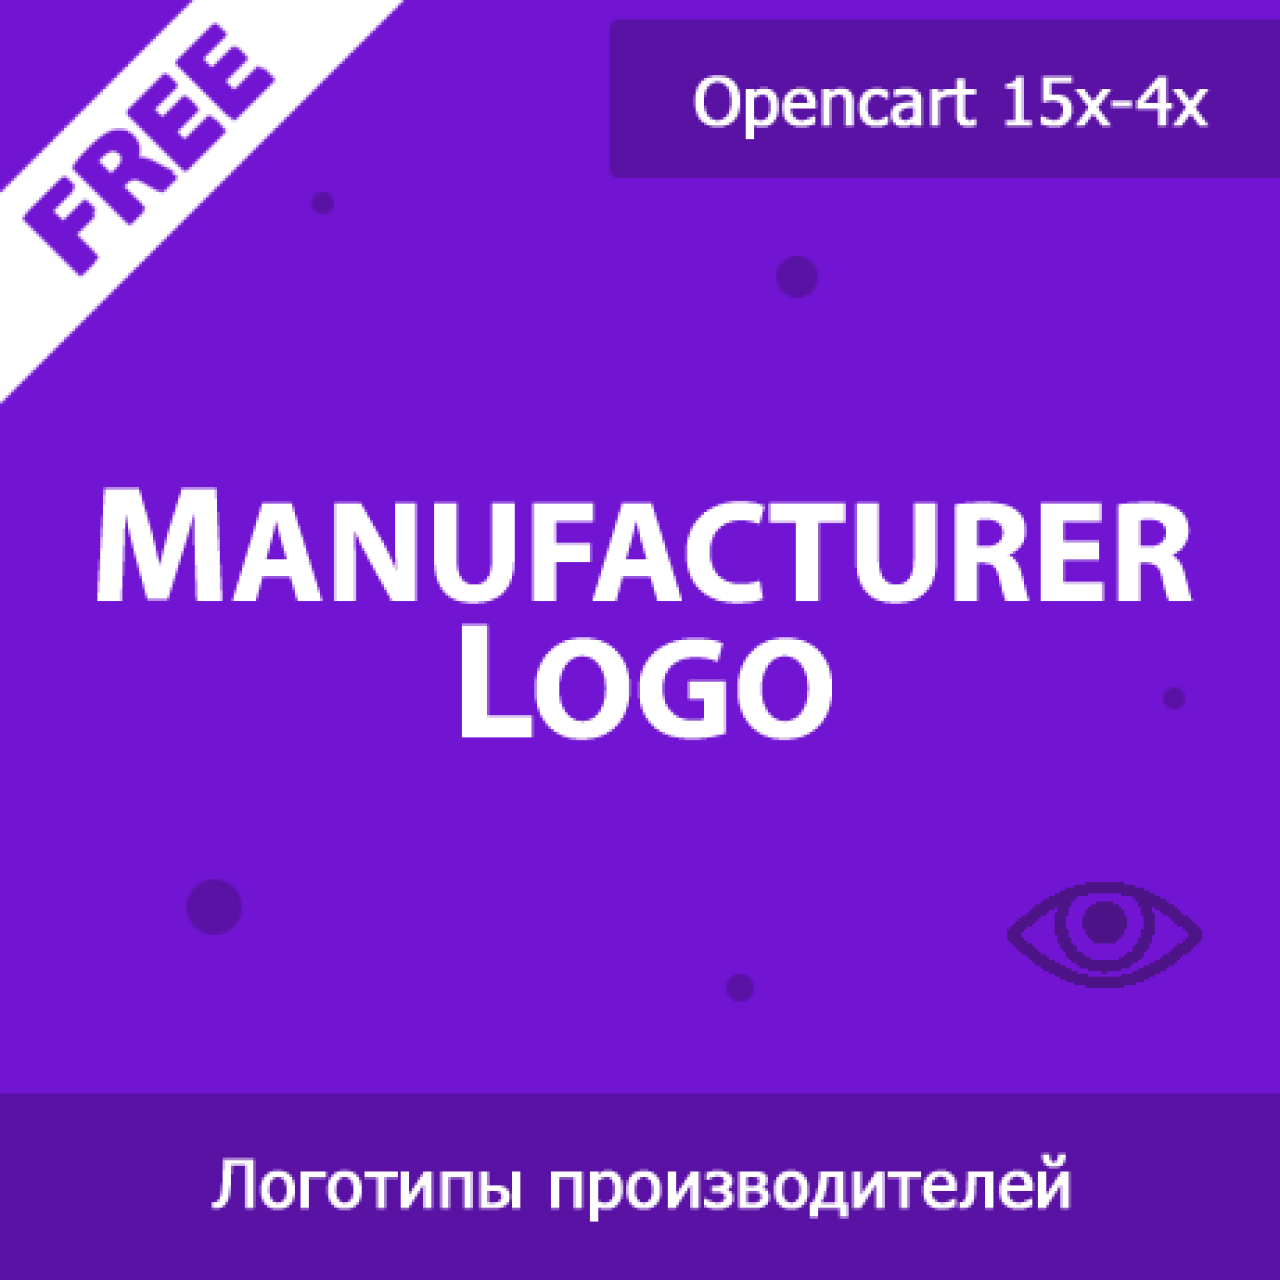 Manufacturer Logo - логотипы производителей из категории Оформление для CMS OpenCart (ОпенКарт)